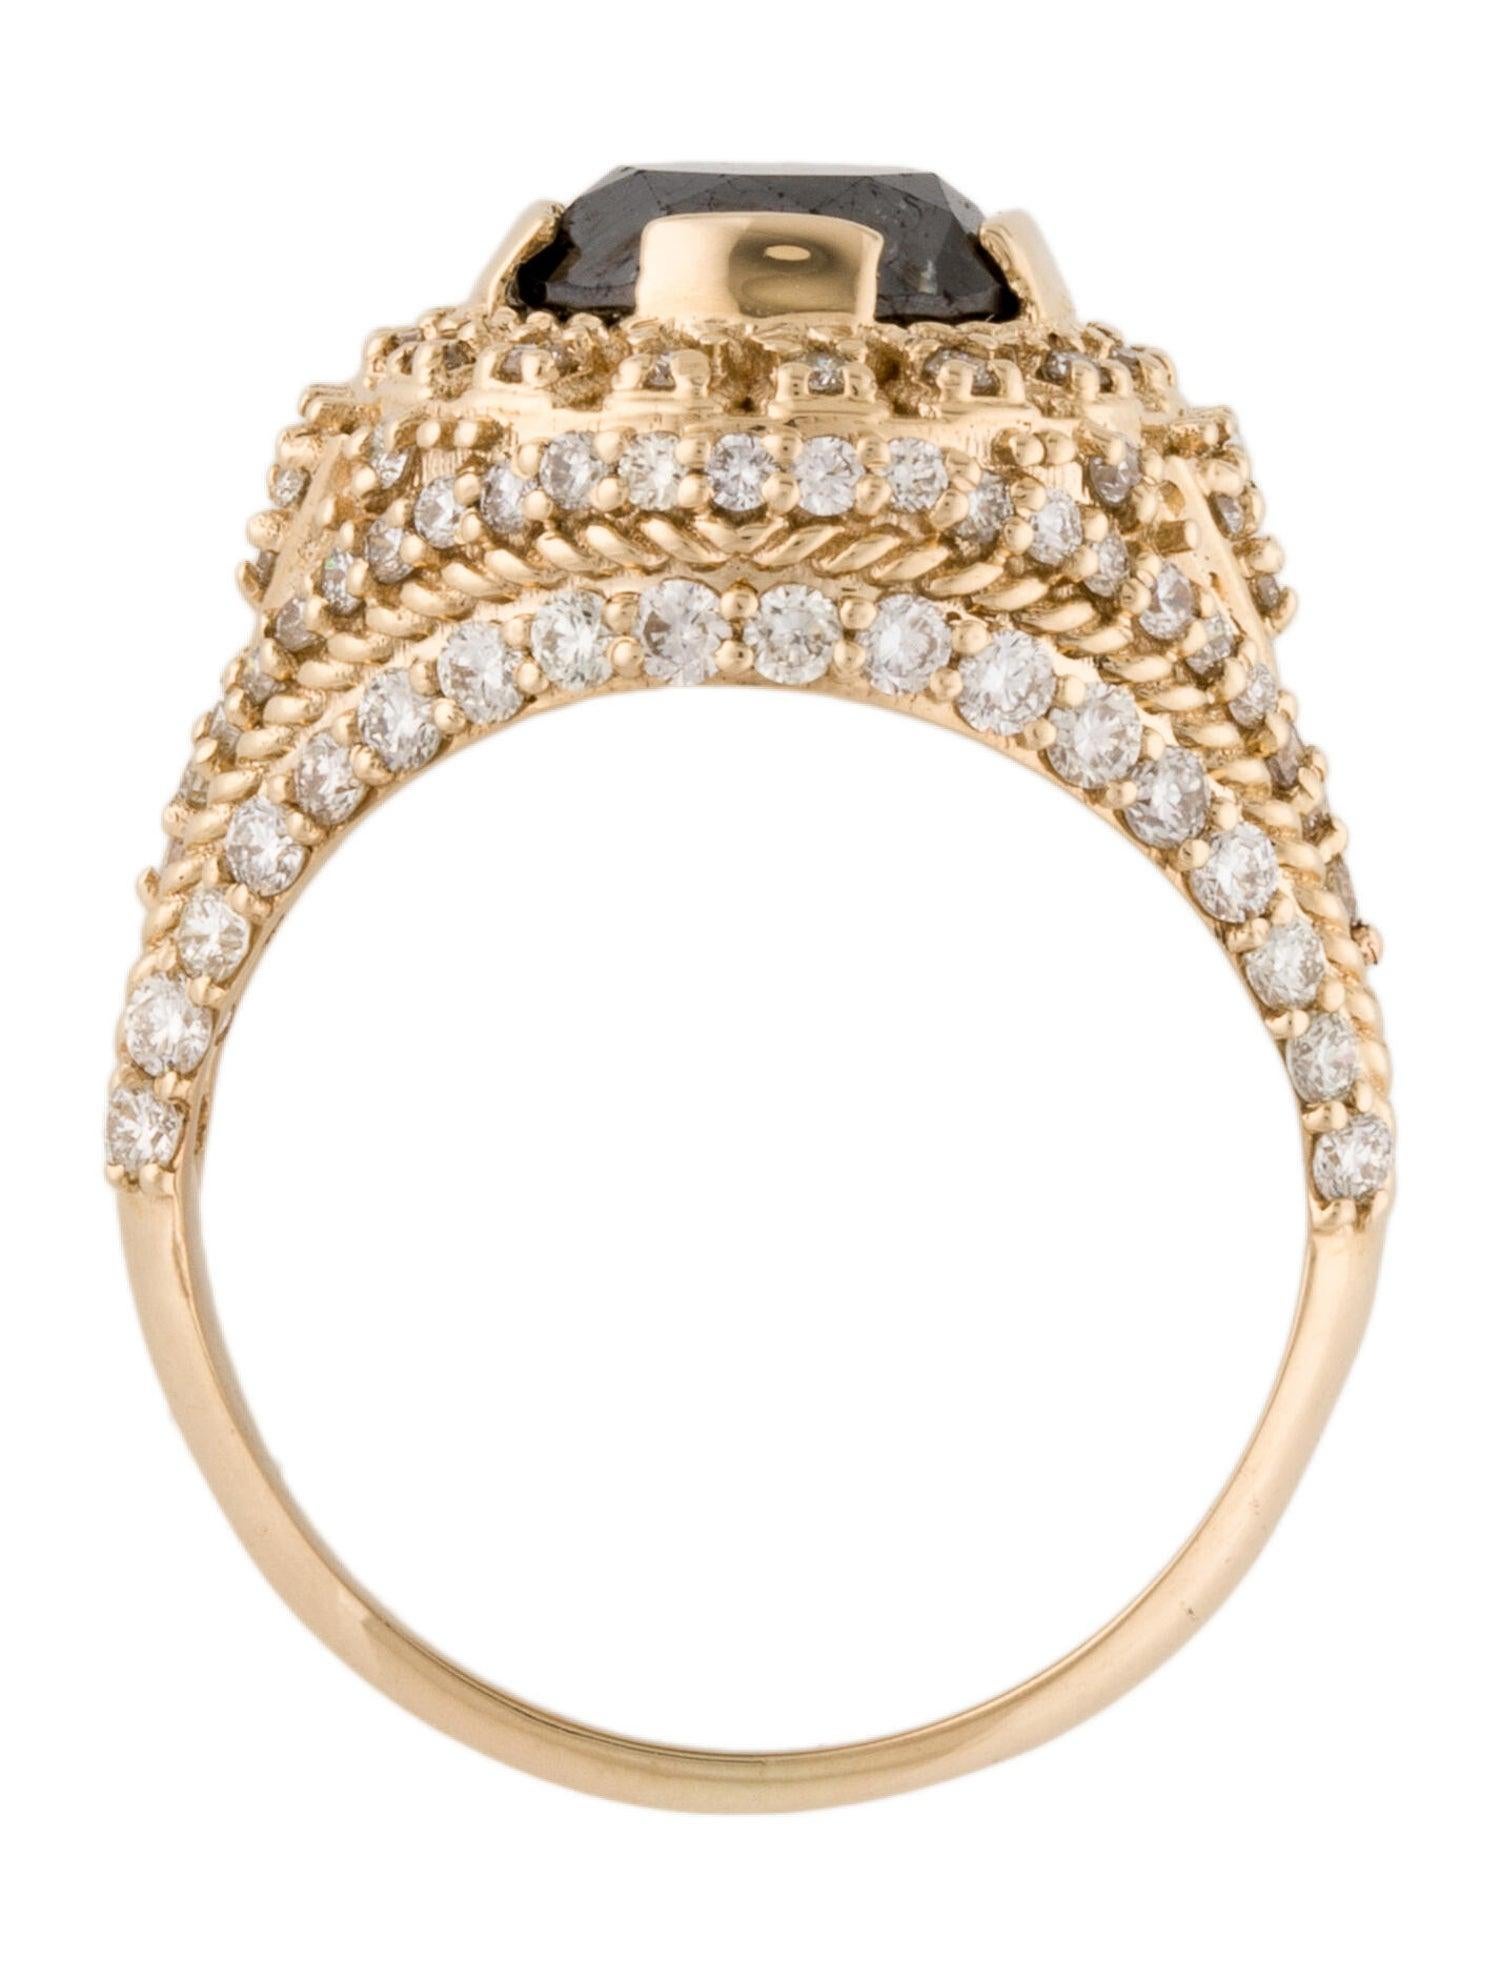 Brilliant Cut Elegant 14K Diamond Cocktail Ring 4.03ctw - Size 7 - Exquisite Luxury Design For Sale